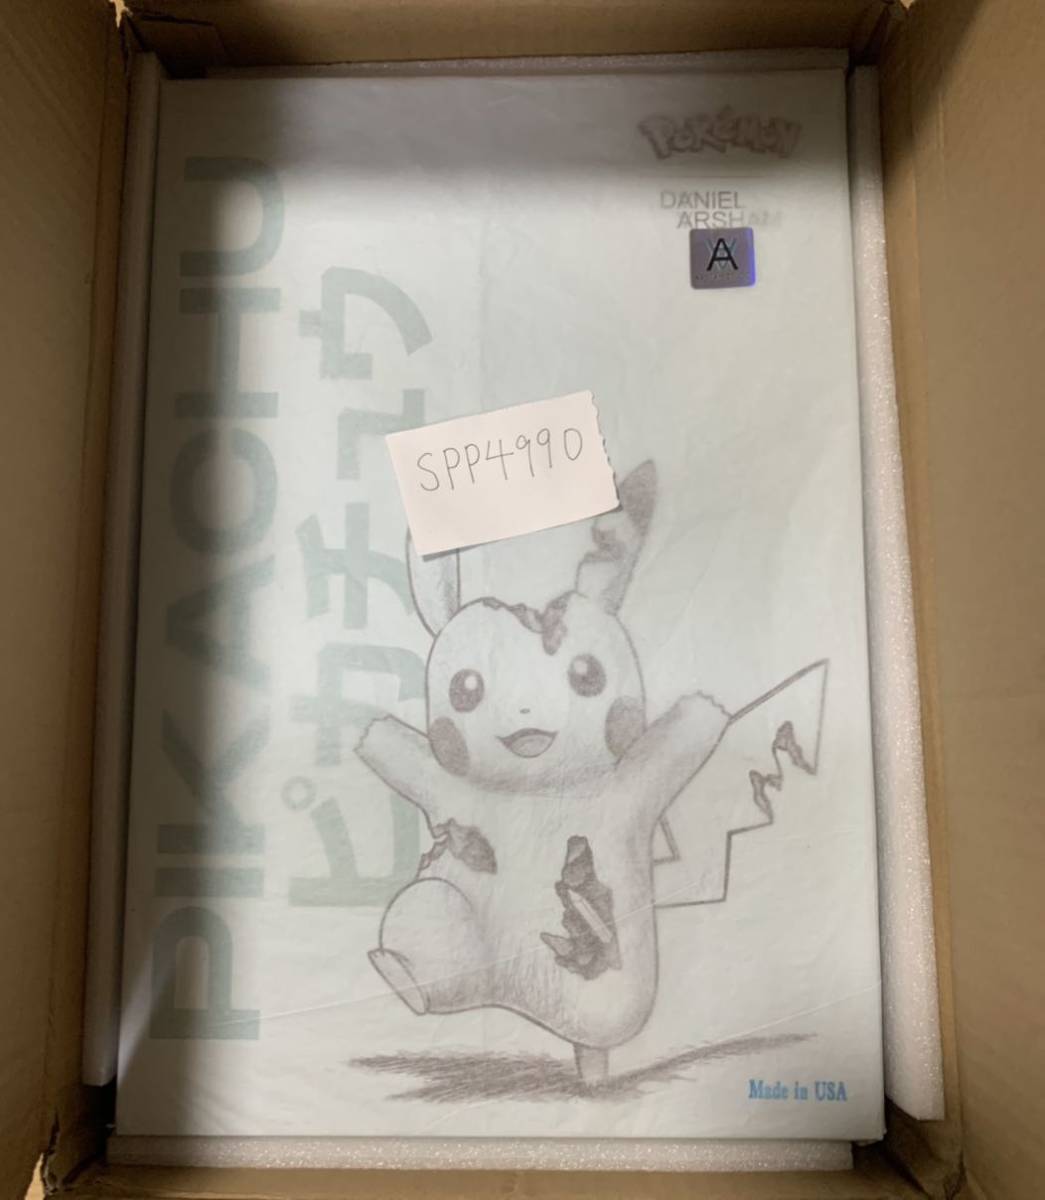 500体限定 BLUE Daniel Arsham × Pokemon Crystalized Pikachu Future 